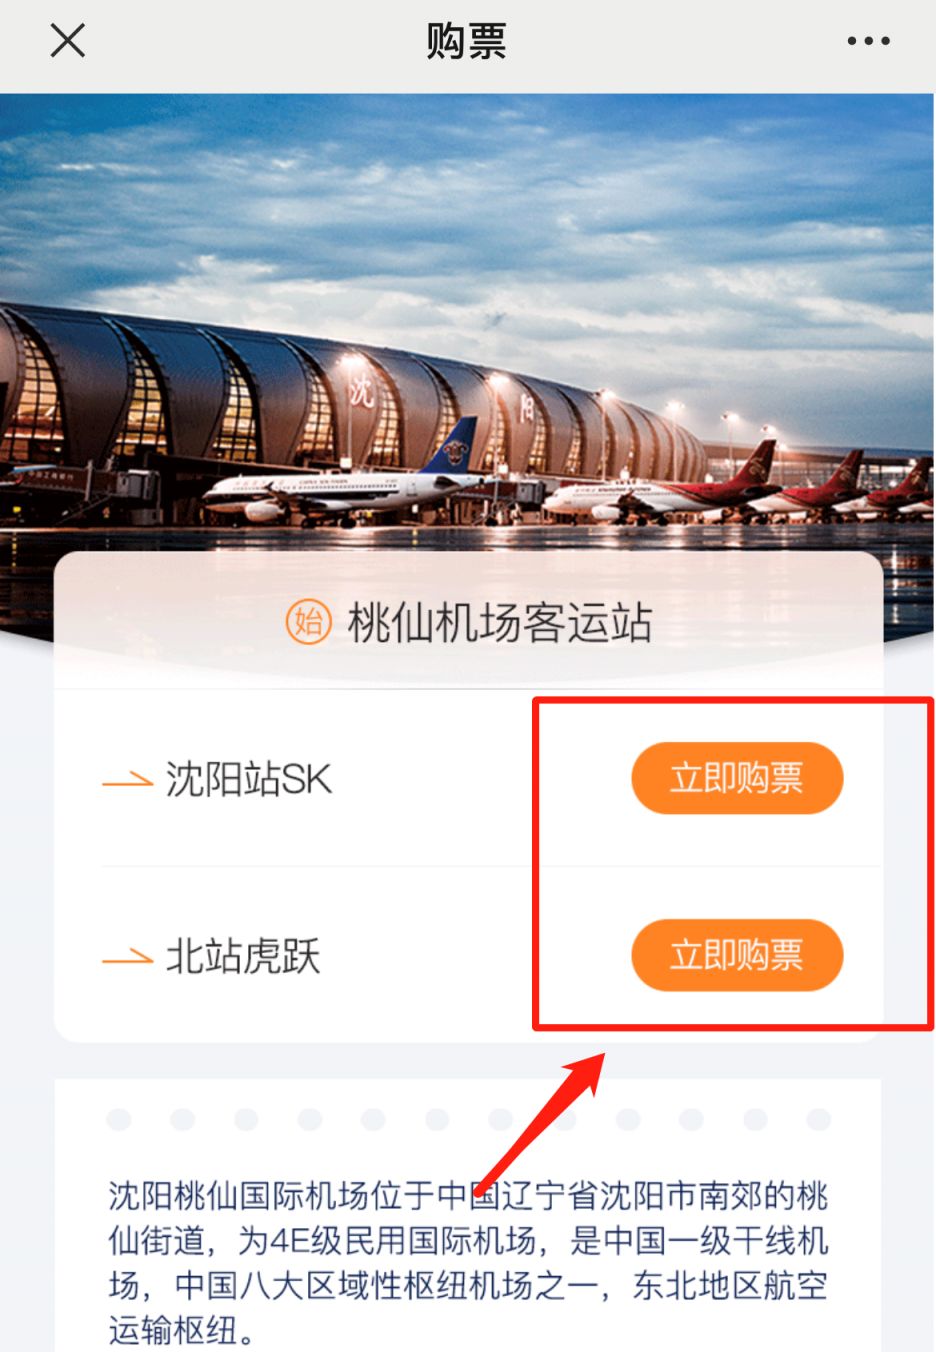 沈阳桃仙机场大巴网上购票平台入口 操作流程